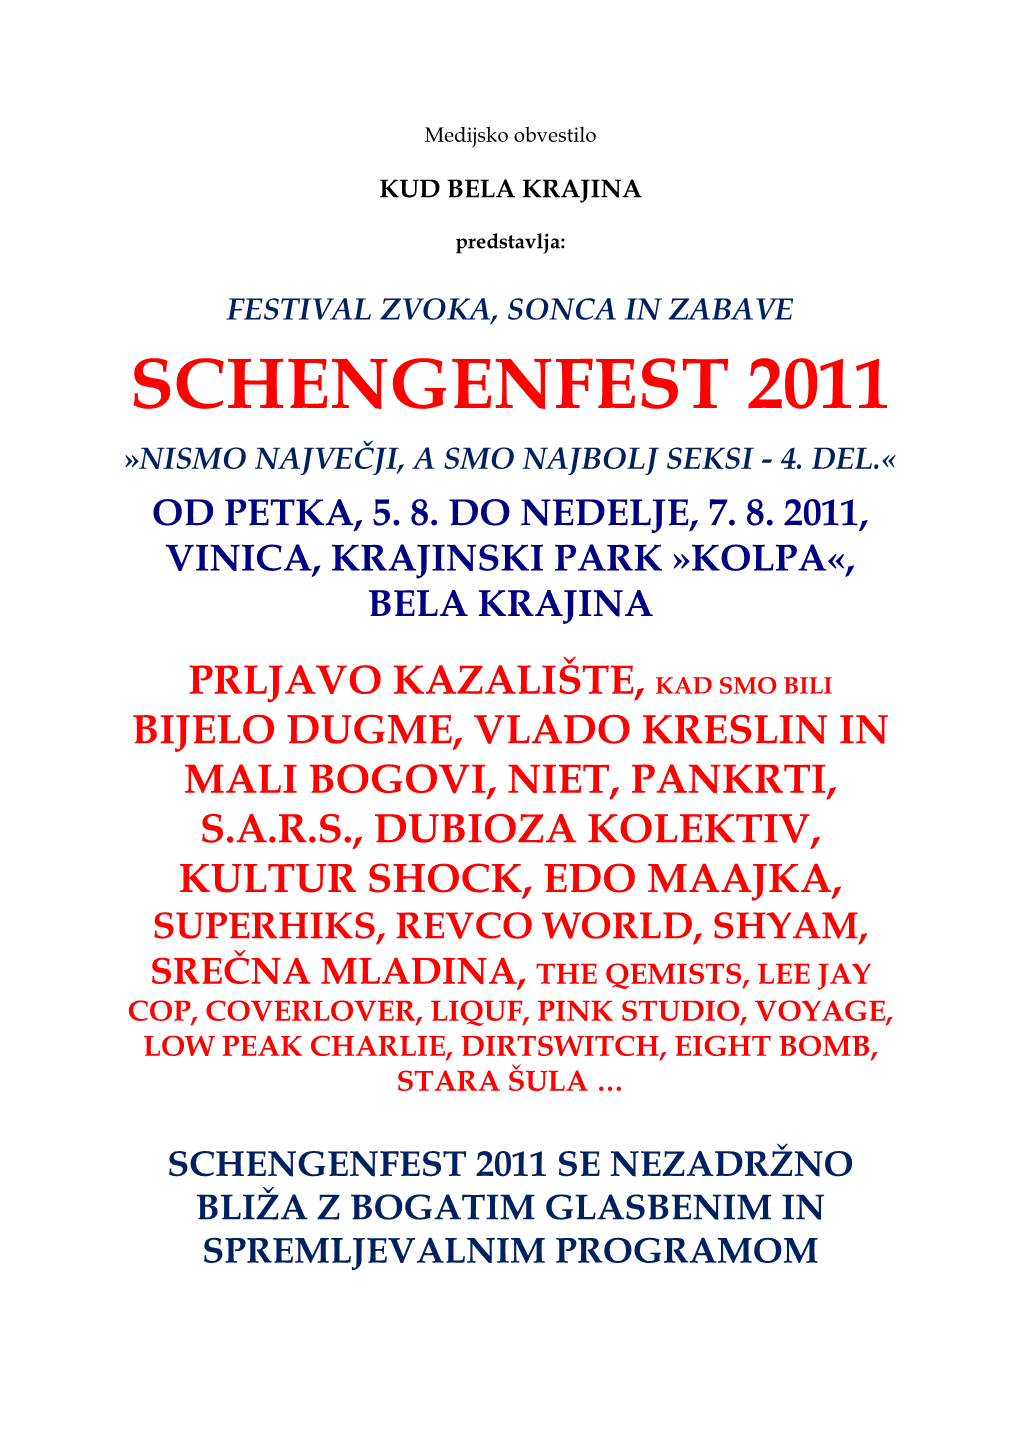 Schengenfest 2011